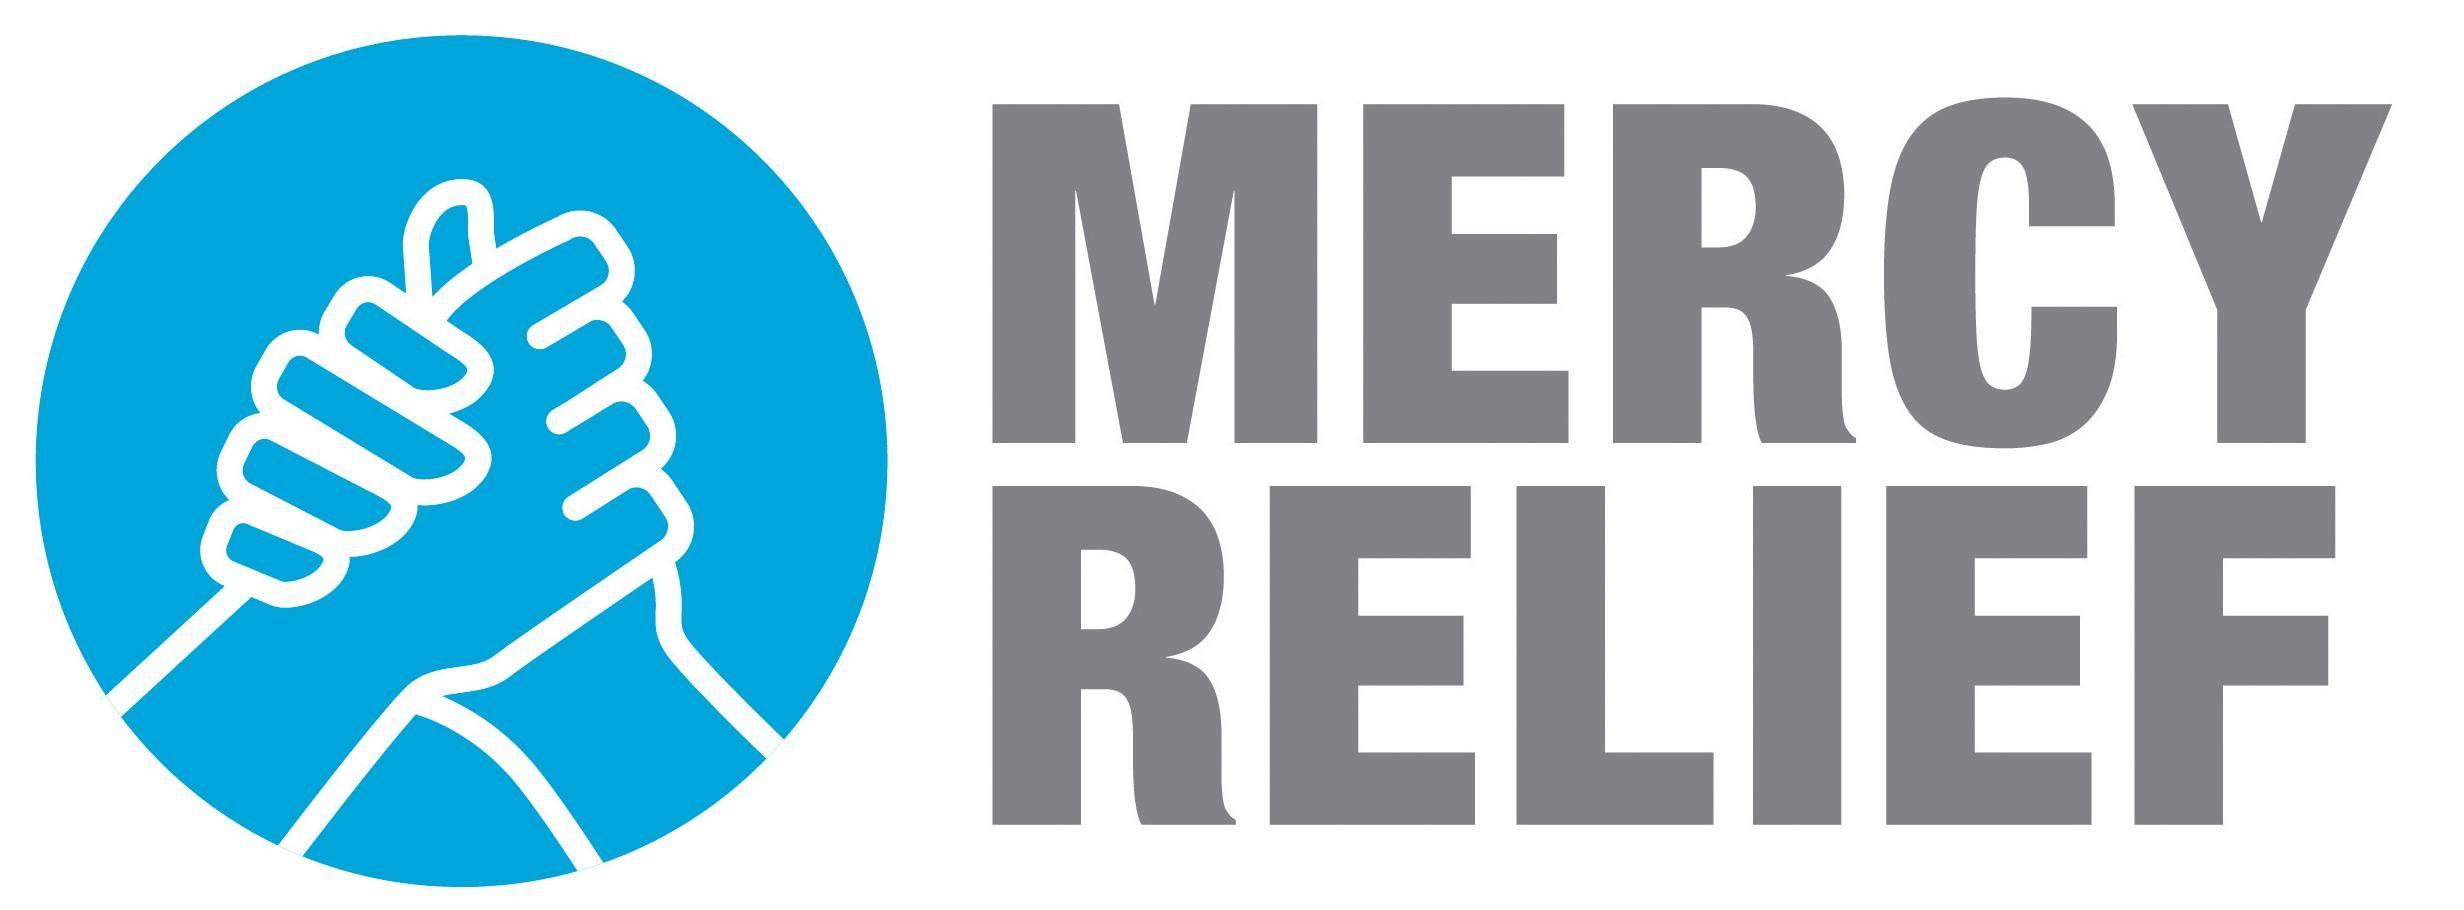 Relief Logo - Relief Logos